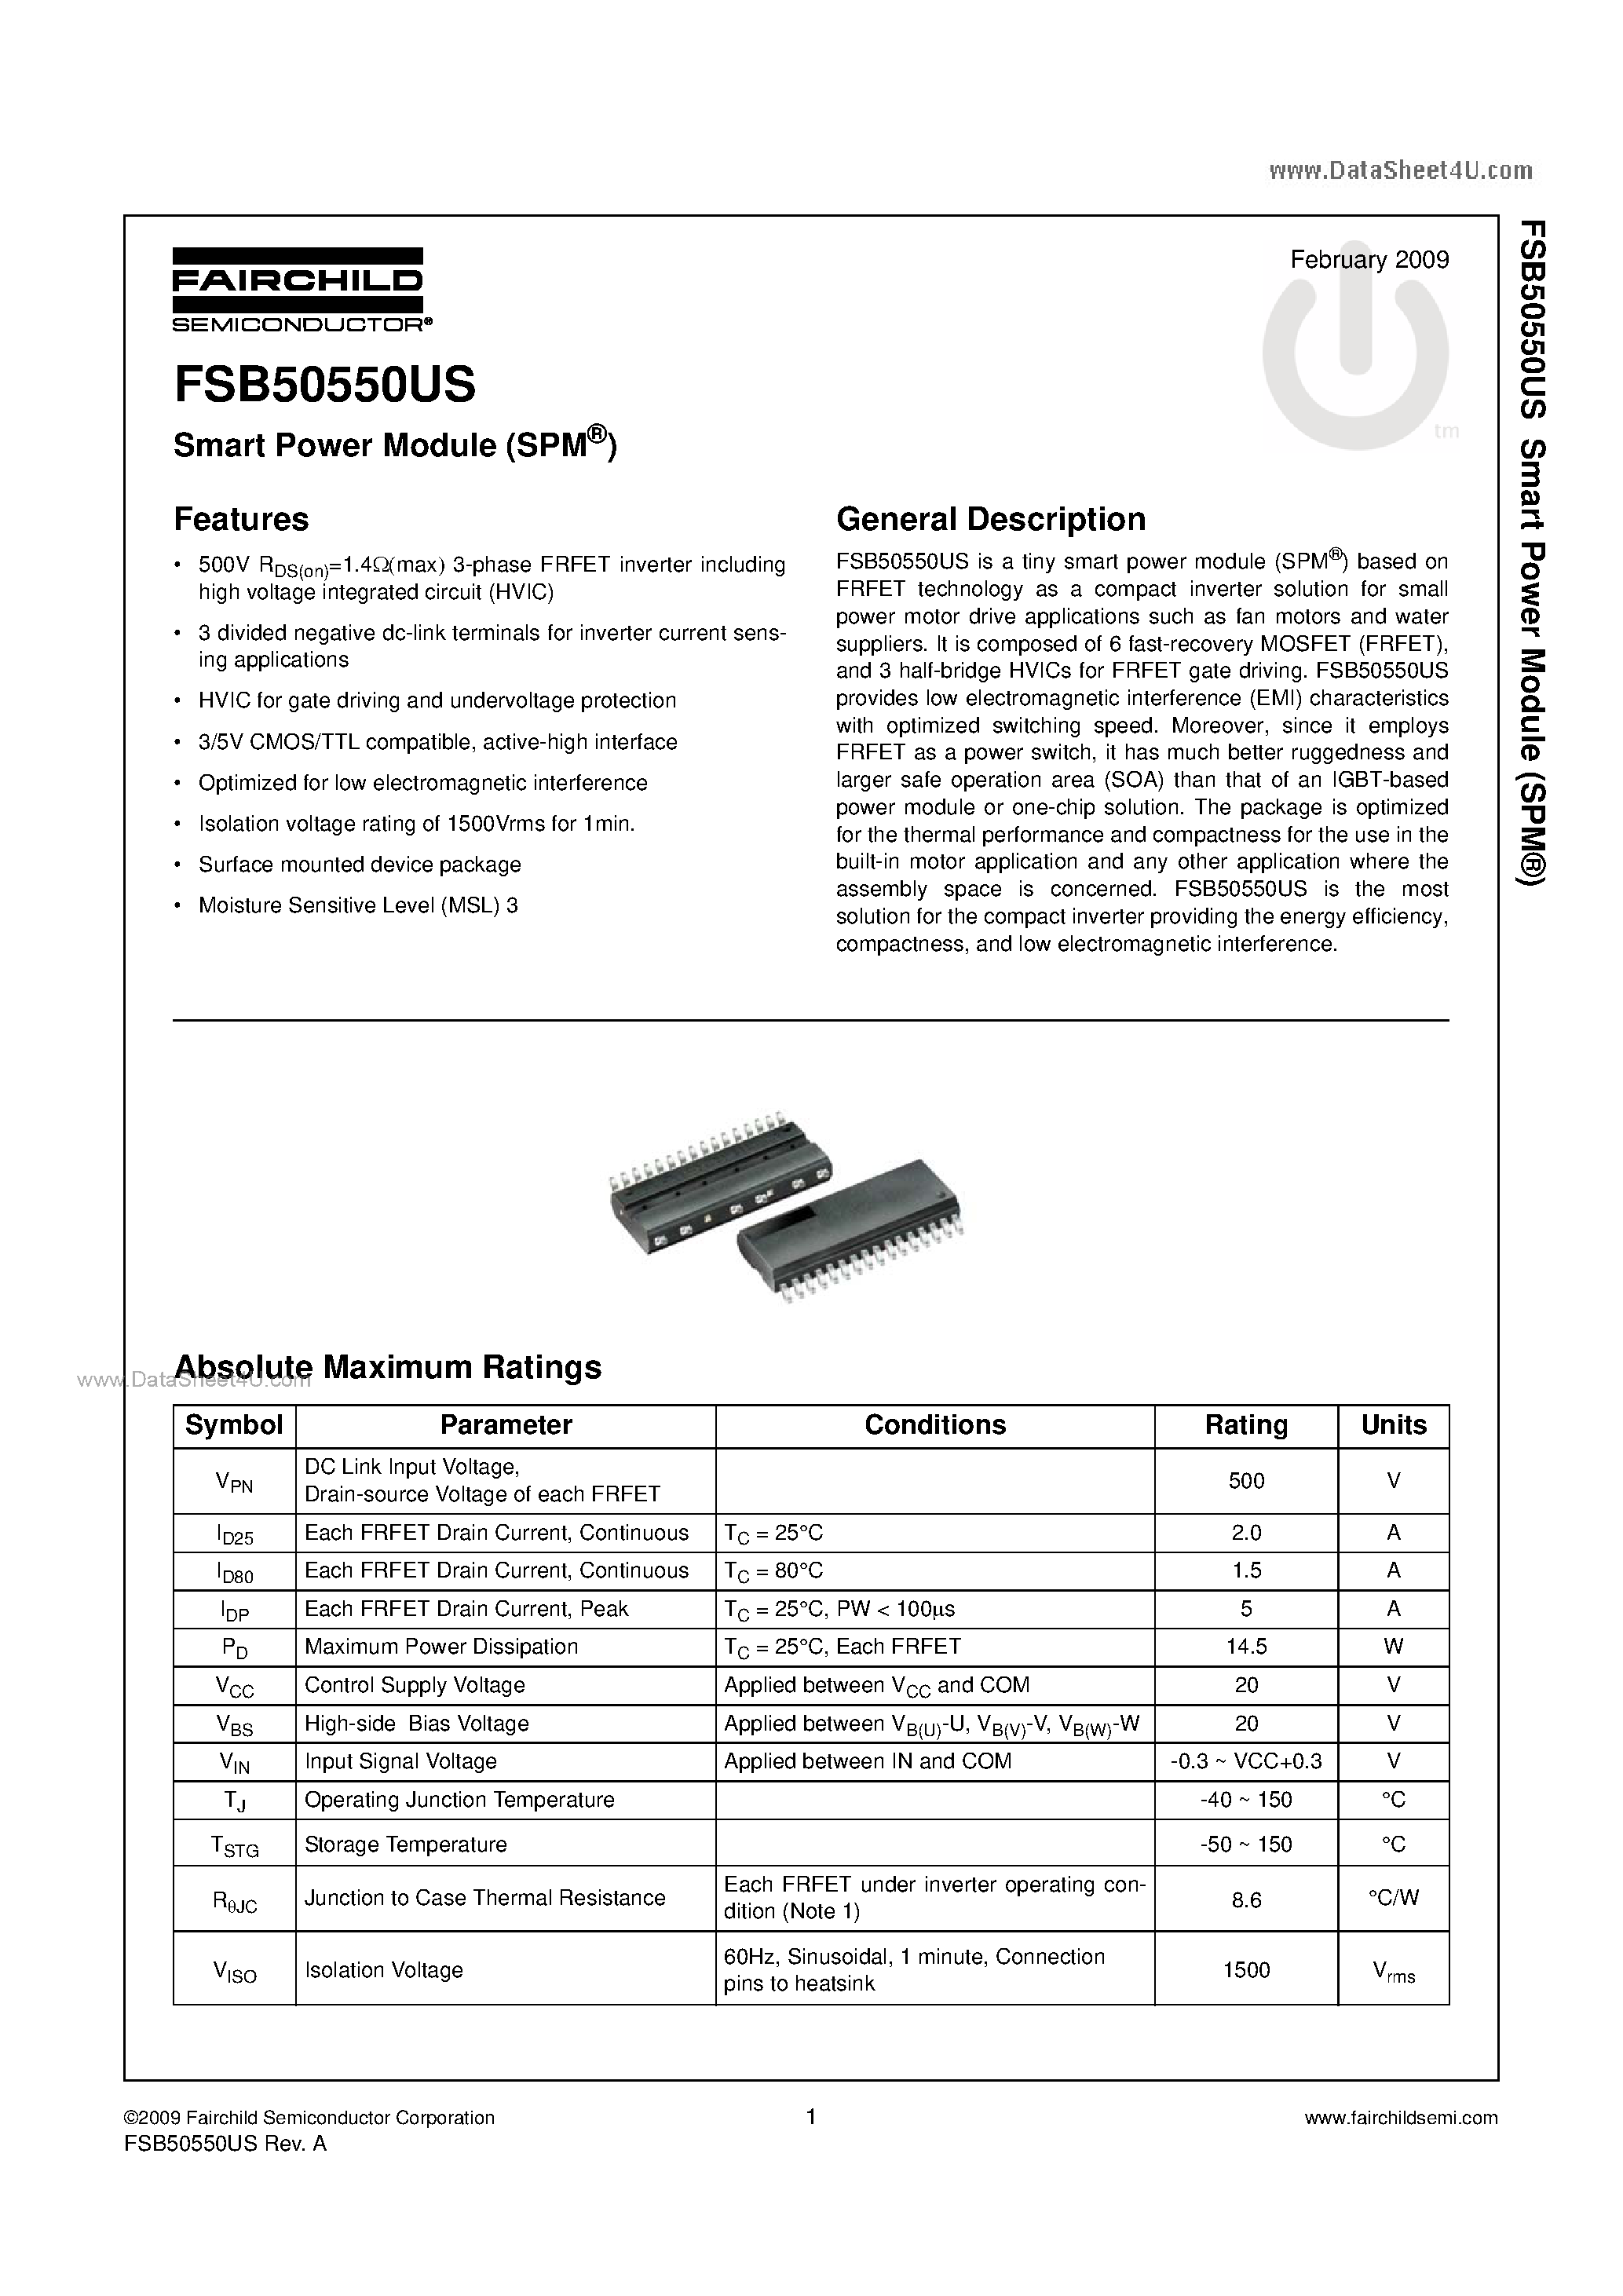 Даташит FSB50550US - Smart Power Module страница 1